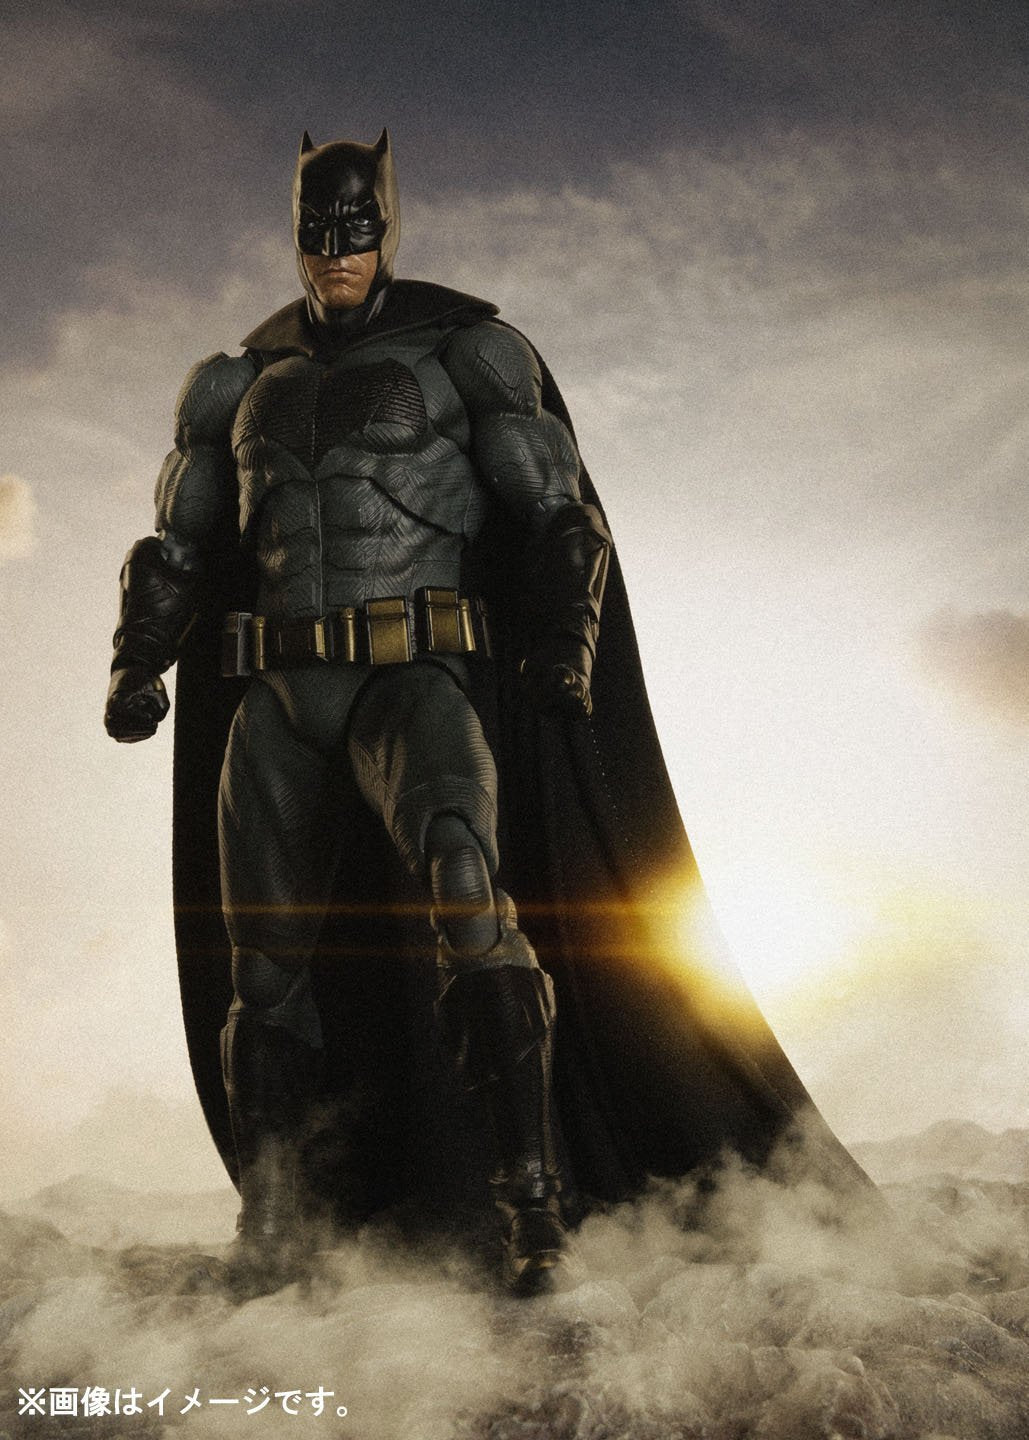 S.H. Figuarts DC Comics Batman Justice League Movie Action Figure